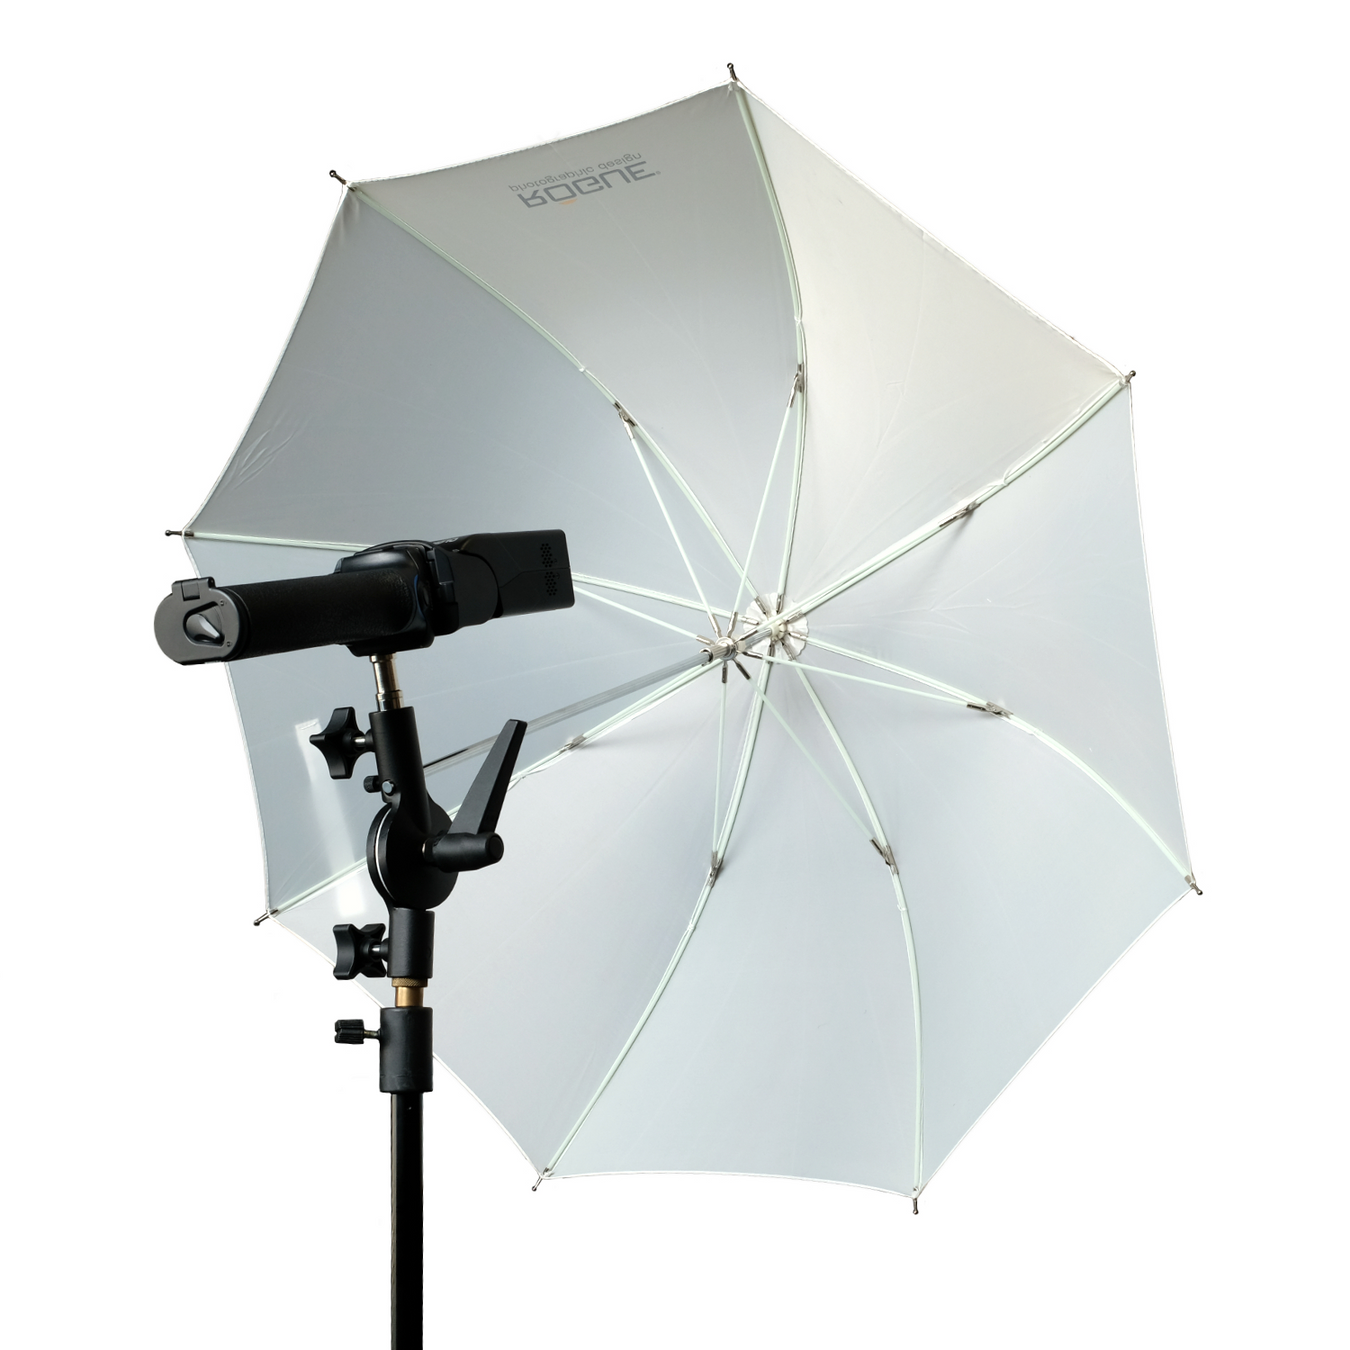 New Rogue Photography Umbrella